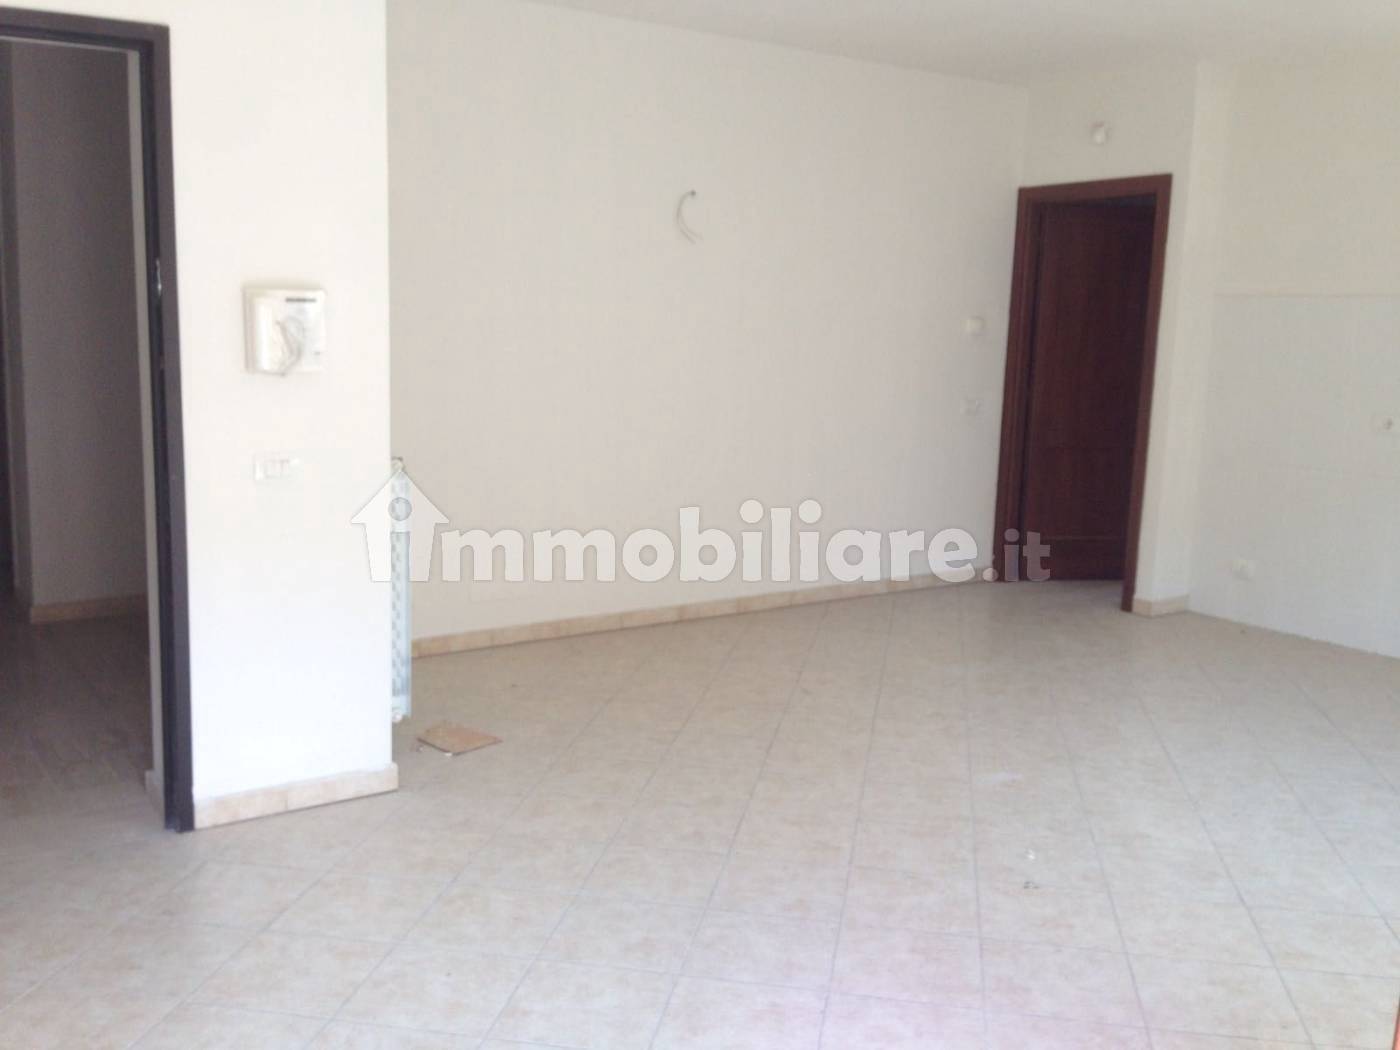 Appartamento in vendita a Prato, 2 locali, zona lei, prezzo € 150.000 | PortaleAgenzieImmobiliari.it